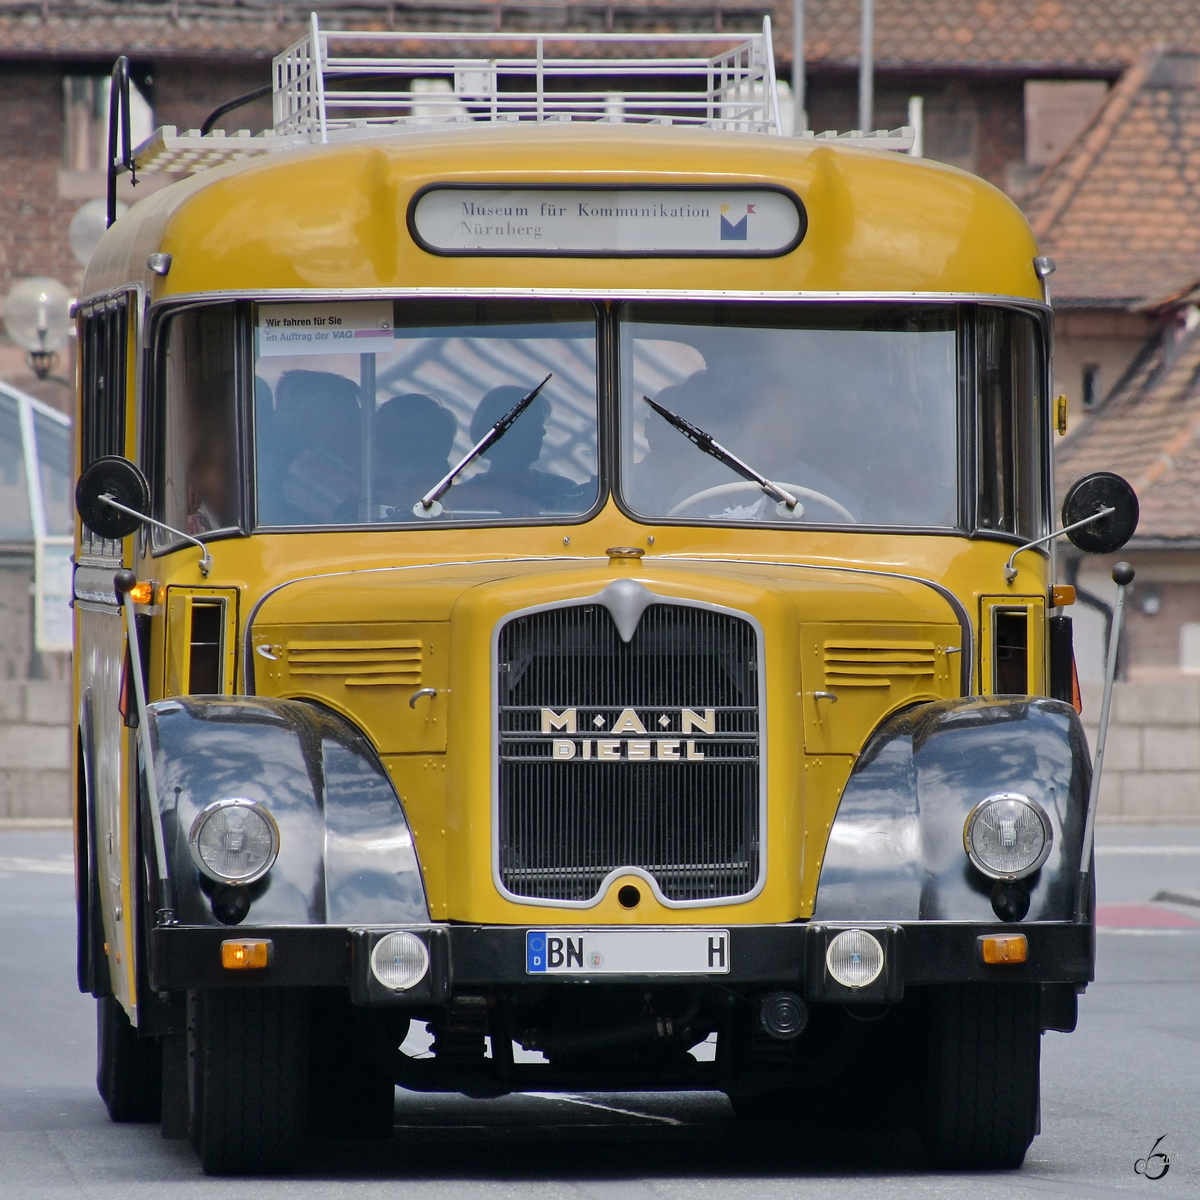 Ein historischer Postbus von MAN auf Tour. (Nürnberg, Mai 2019)